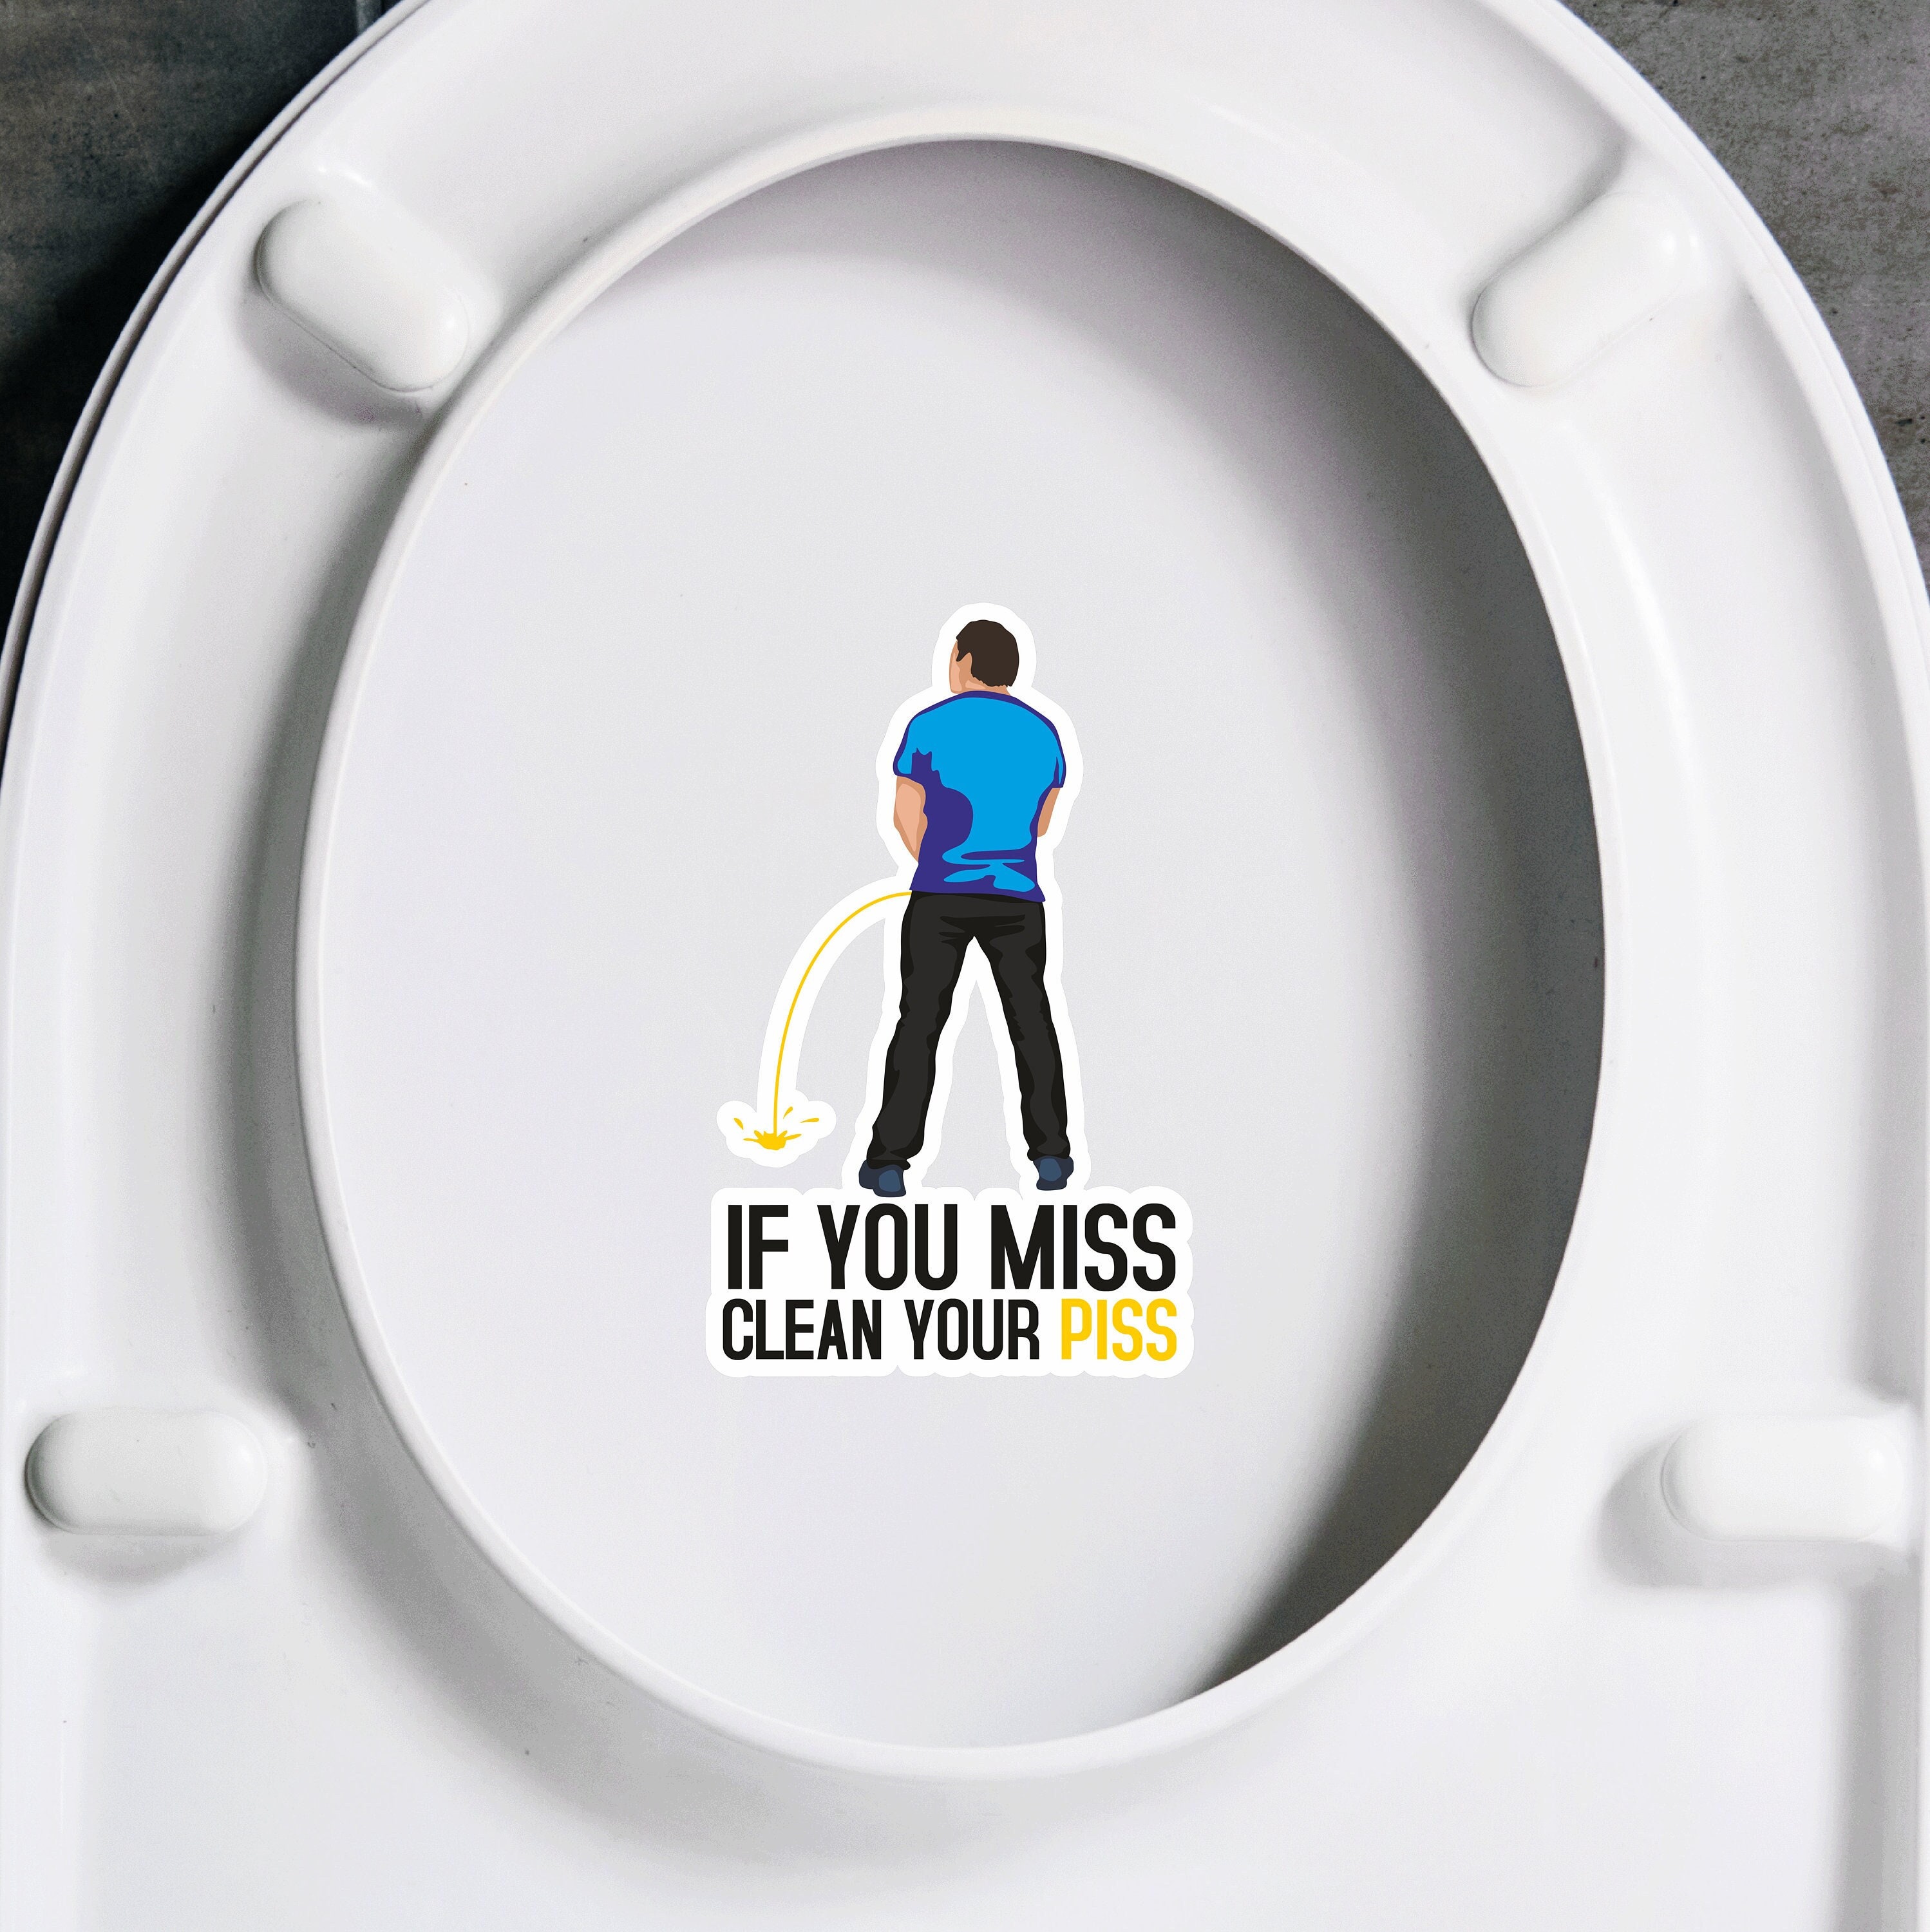 Déco humour : Sticker mural La prière des toilettes - 8,90 €